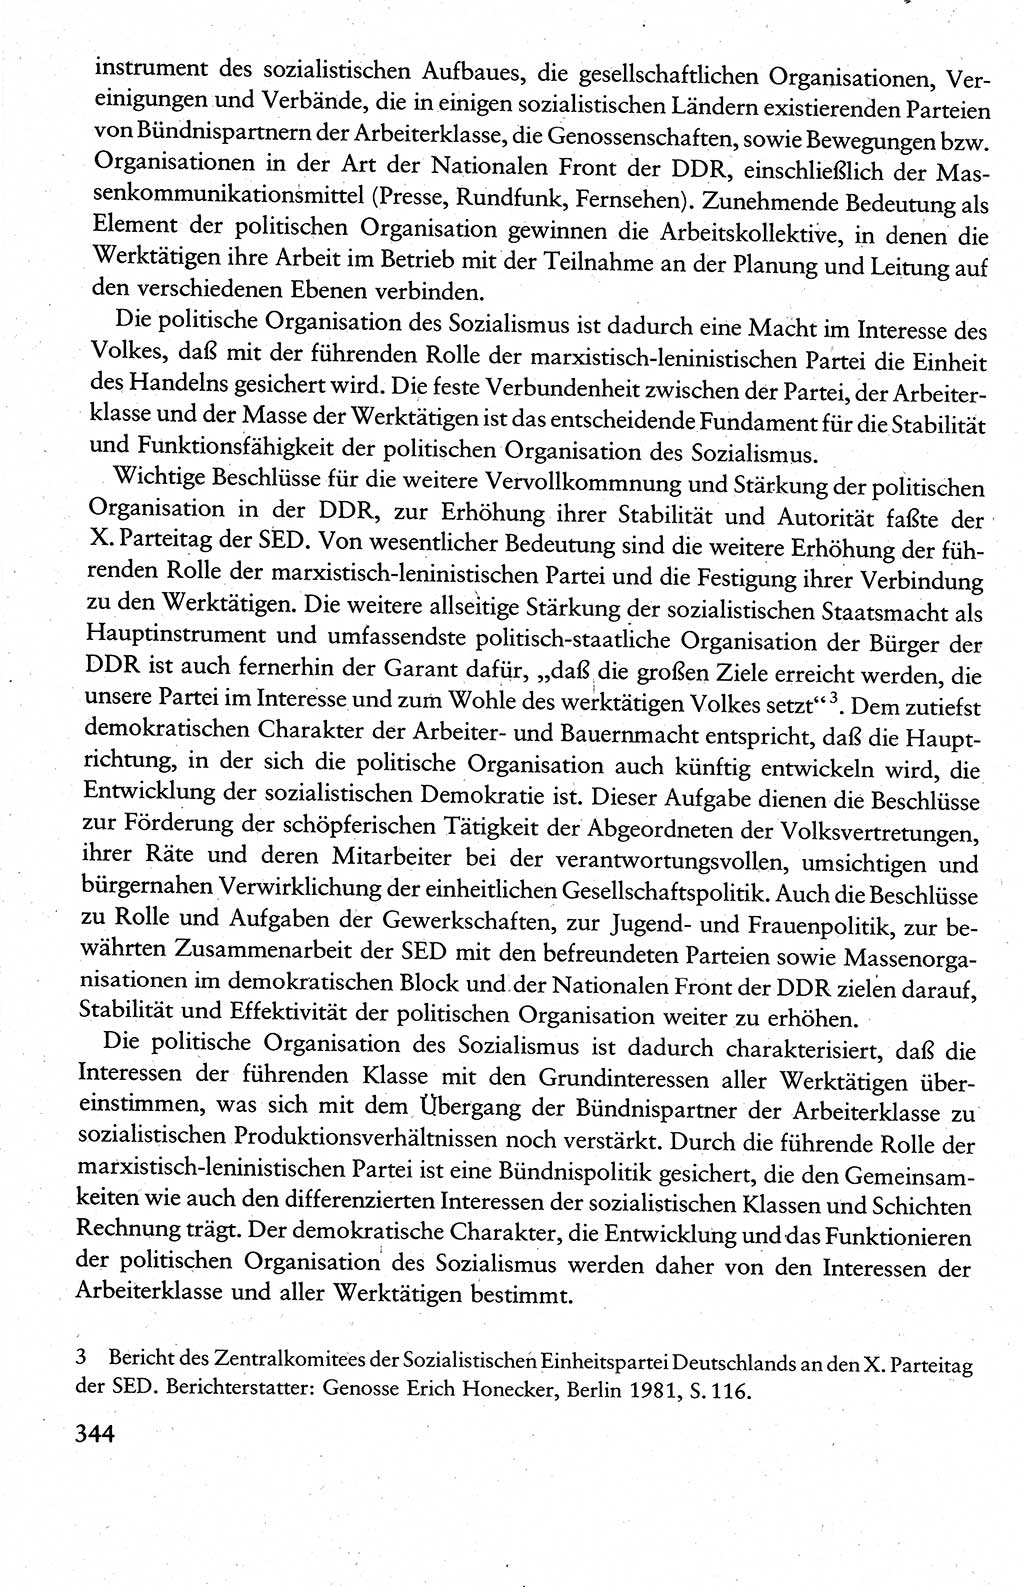 Wissenschaftlicher Kommunismus [Deutsche Demokratische Republik (DDR)], Lehrbuch für das marxistisch-leninistische Grundlagenstudium 1983, Seite 344 (Wiss. Komm. DDR Lb. 1983, S. 344)